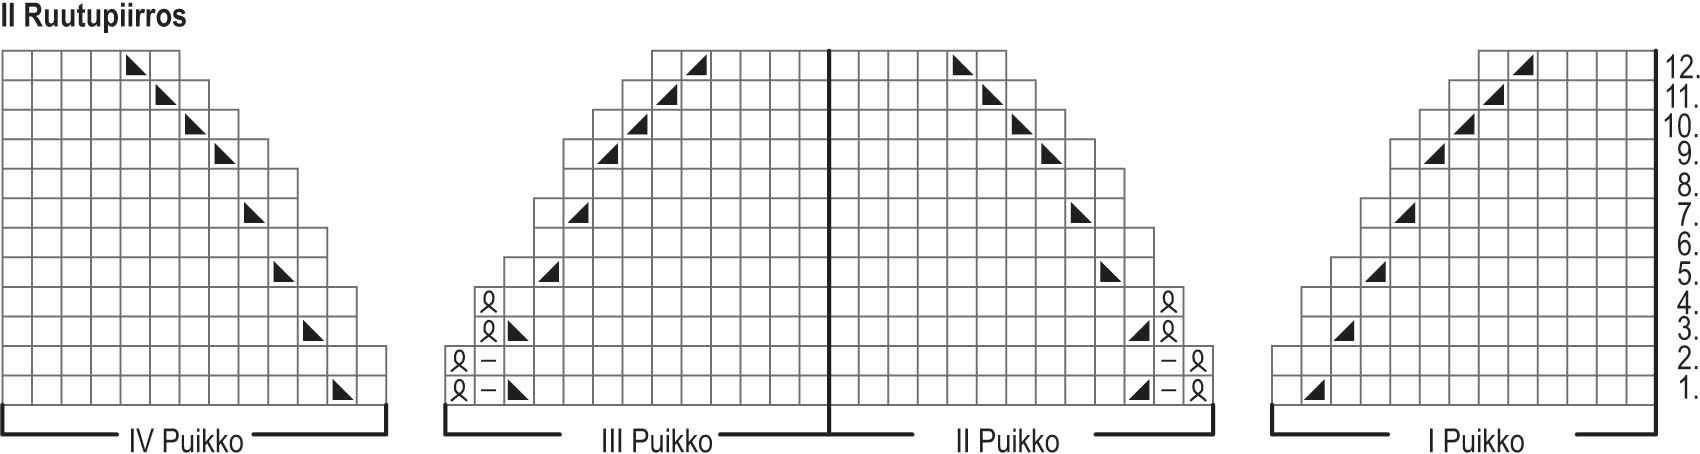 Kalliokielo-sukat Instruction 2